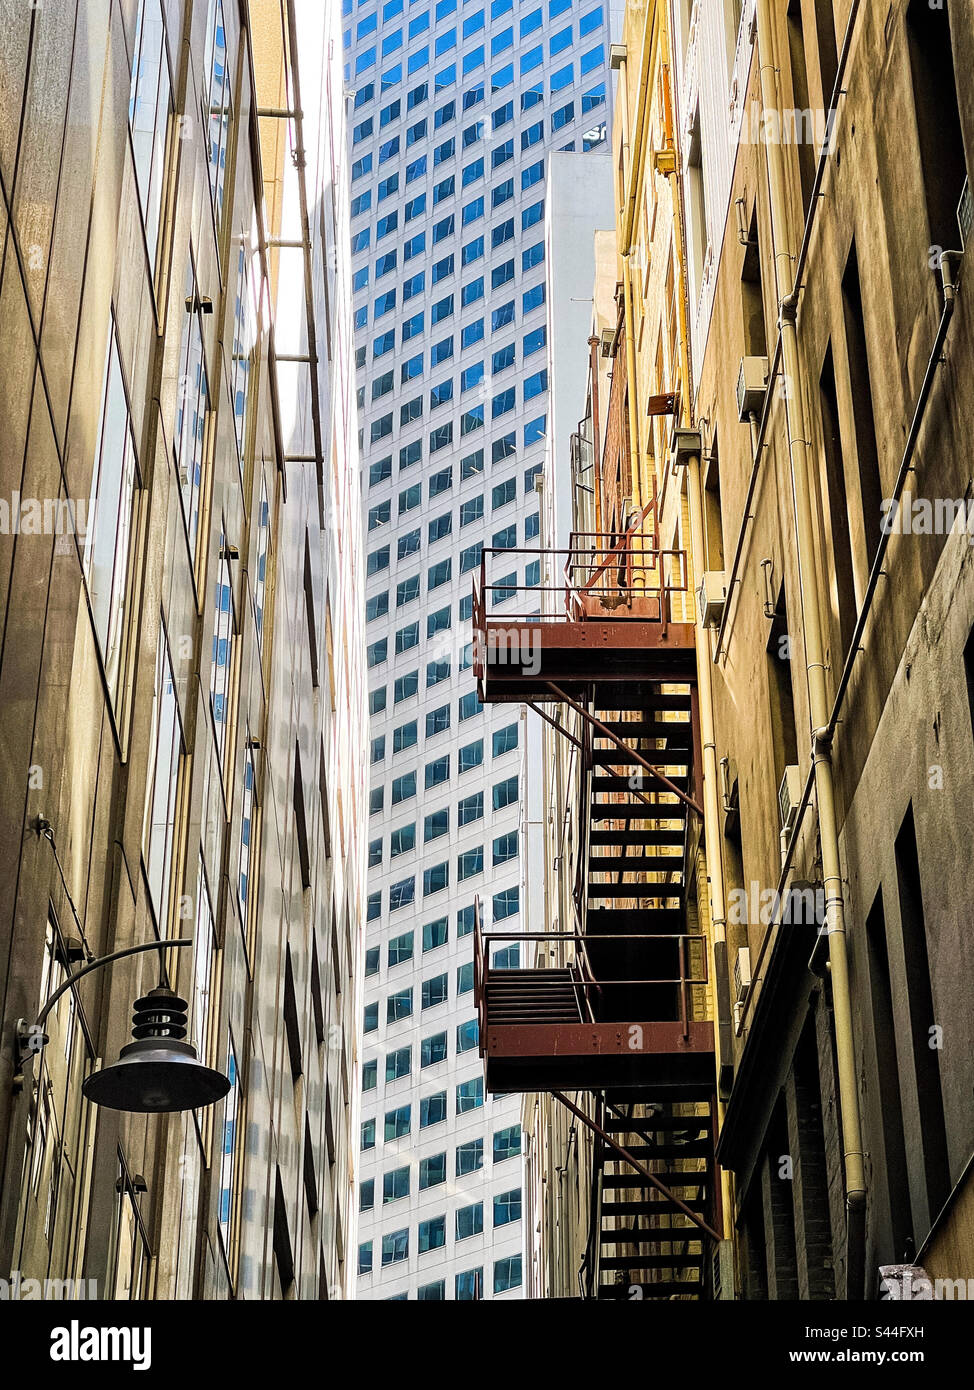 Nebeneinander. Alte Gebäude mit Feuertreppe in einer schmalen Gasse vor dem modernen Wolkenkratzer in der Mitte am Ende der Gasse in Melbourne, Victoria, Australien. Ansicht aus niedrigem Winkel. Stockfoto